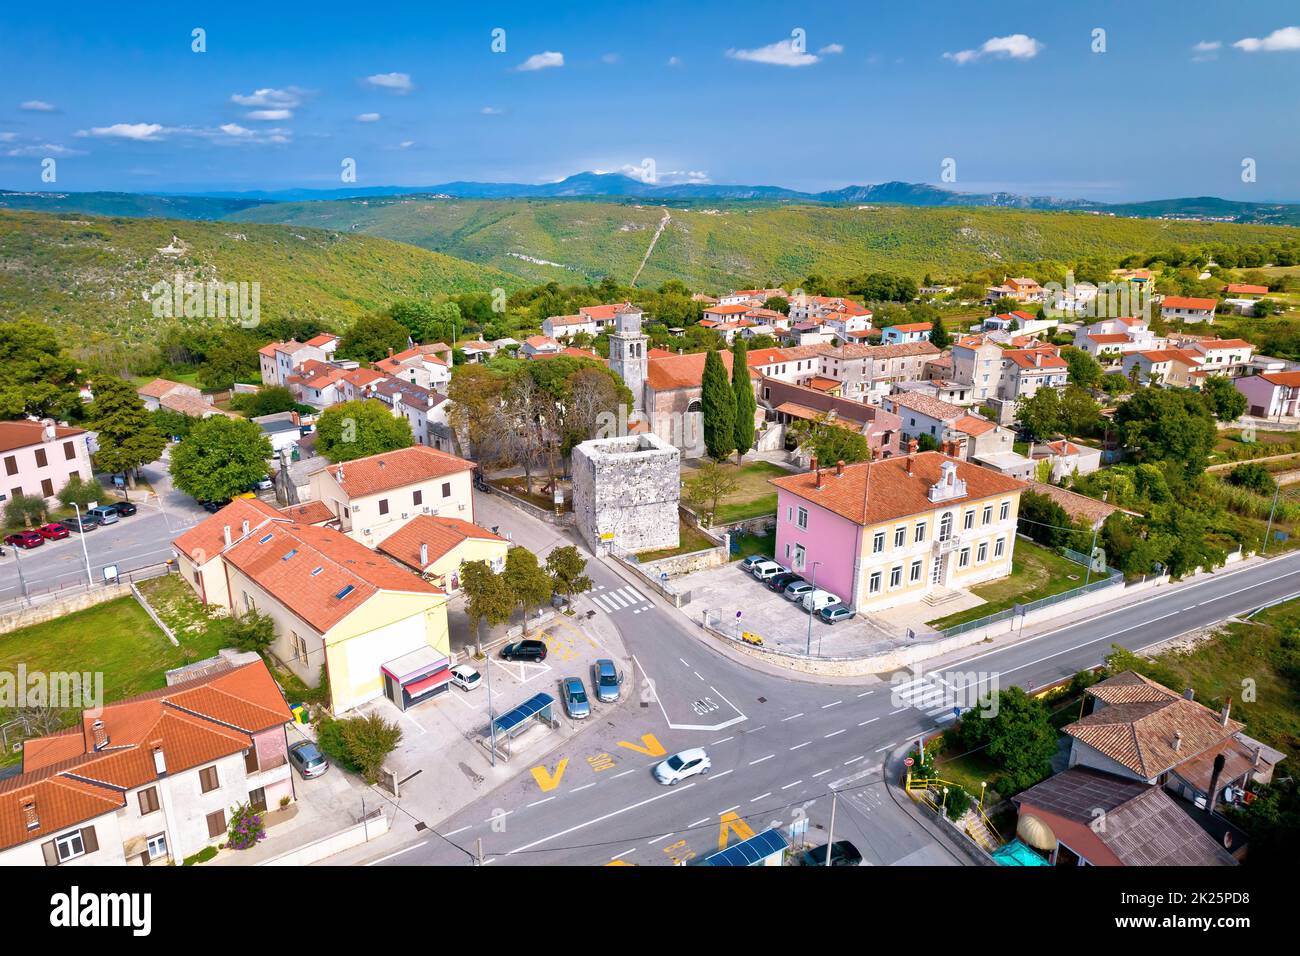 Ville de Barban sur la pittoresque colline de l'Istrie vue aérienne Banque D'Images